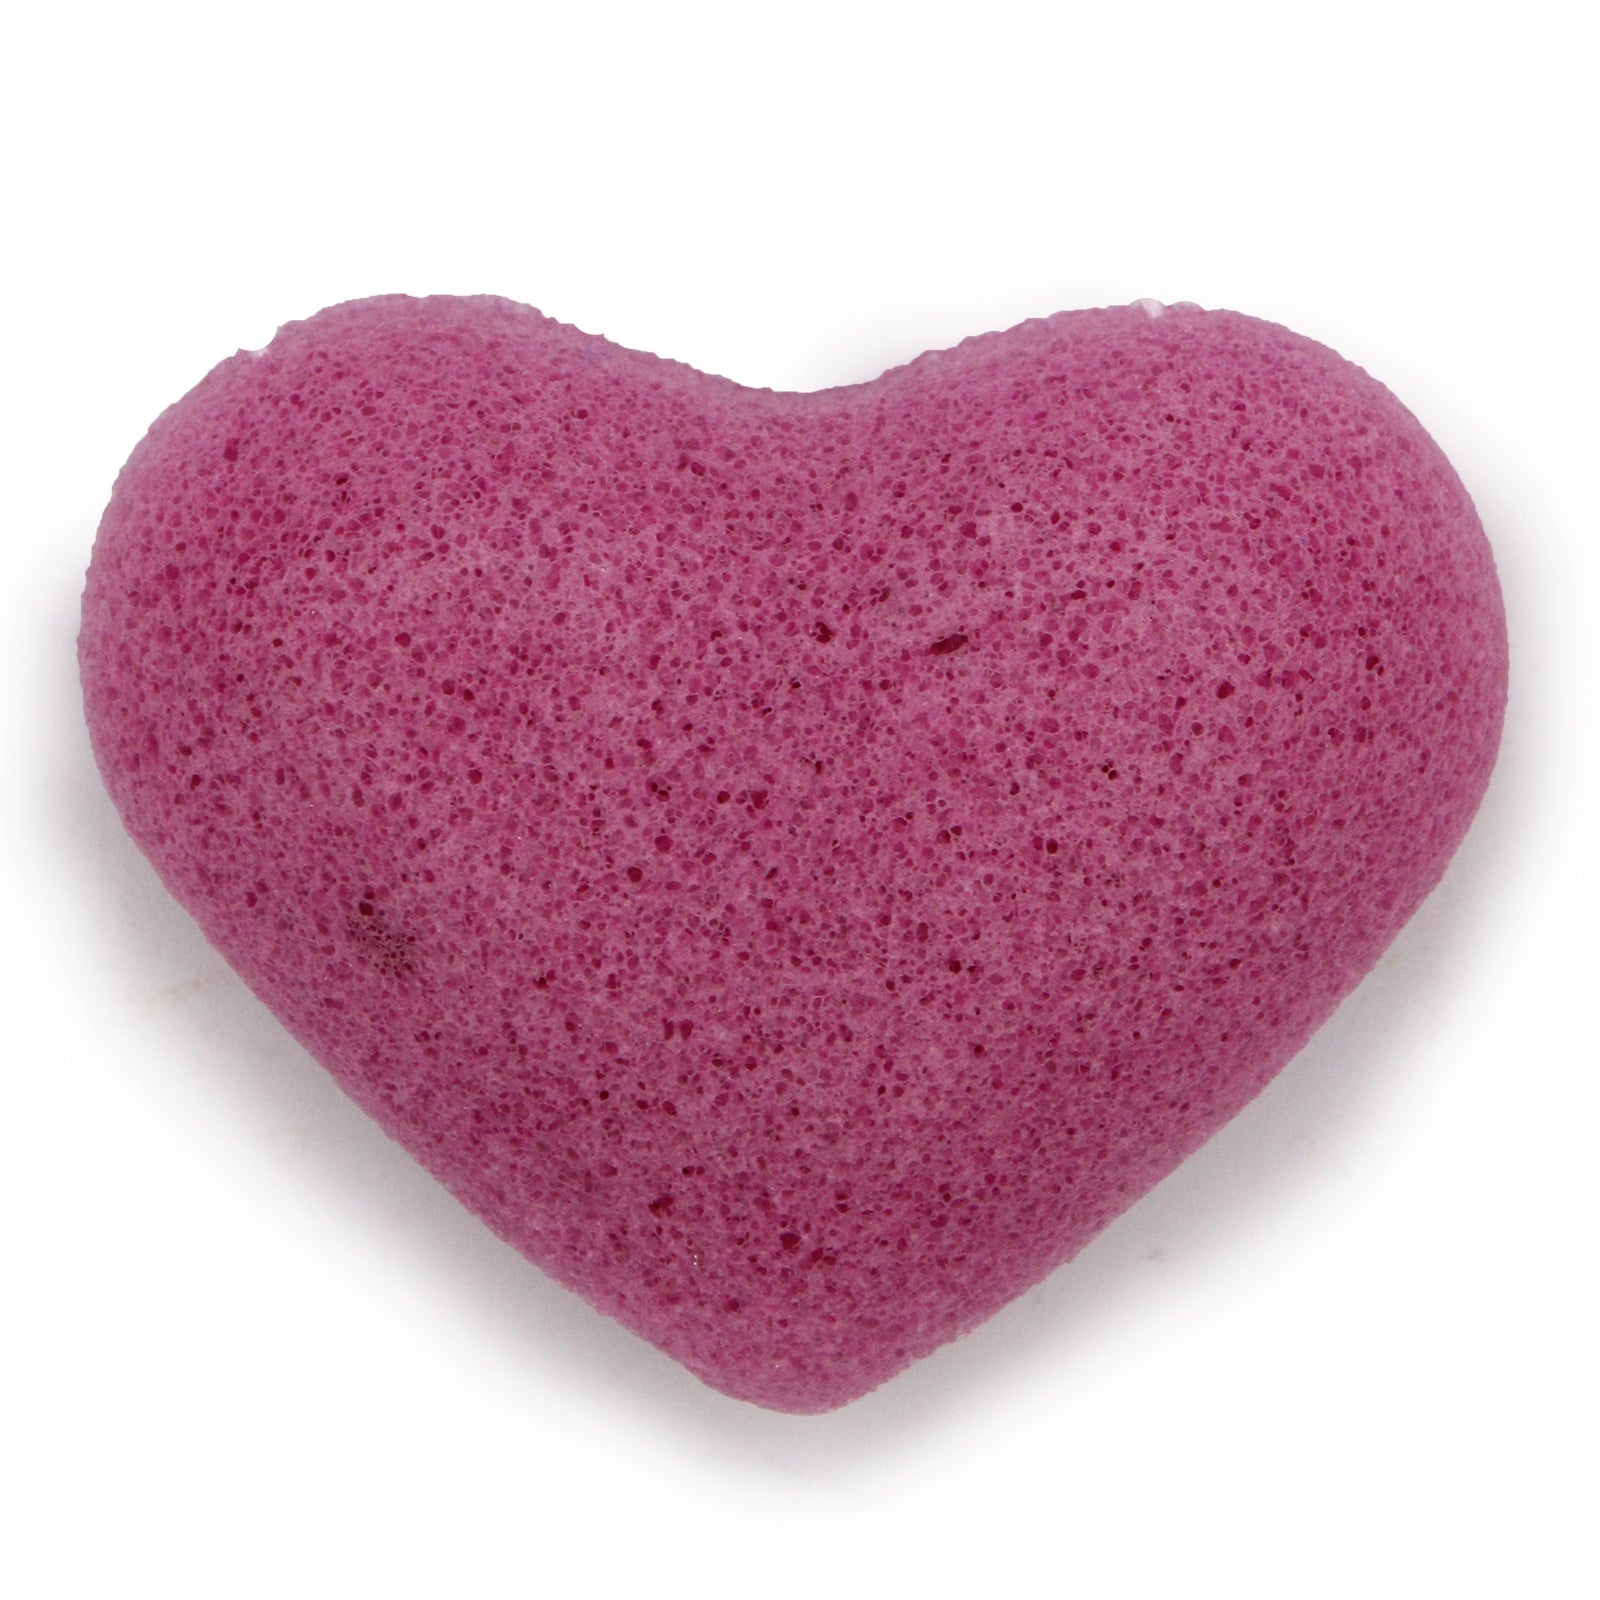 View Konjac Heart Sponge Lavender information